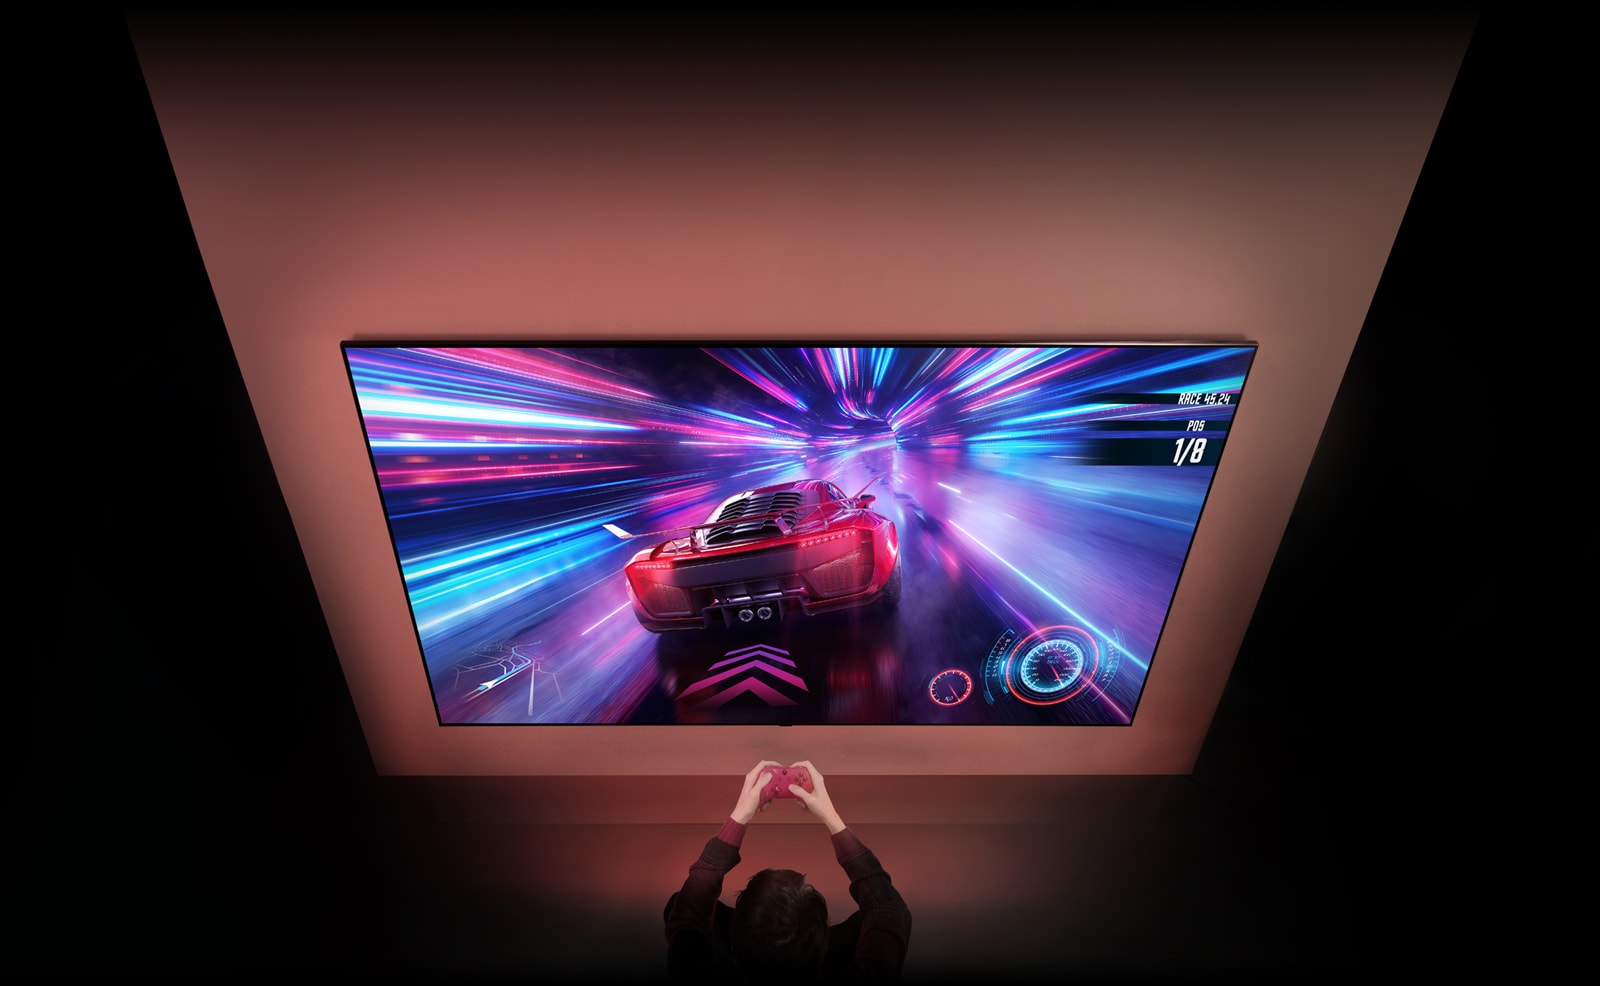 Redzams liels televizors pie sienas un sacīkšu spēles ekrāns. Televizora priekšā var redzēt rokas un kontrolierus, personai koncentrējoties uz spēli.